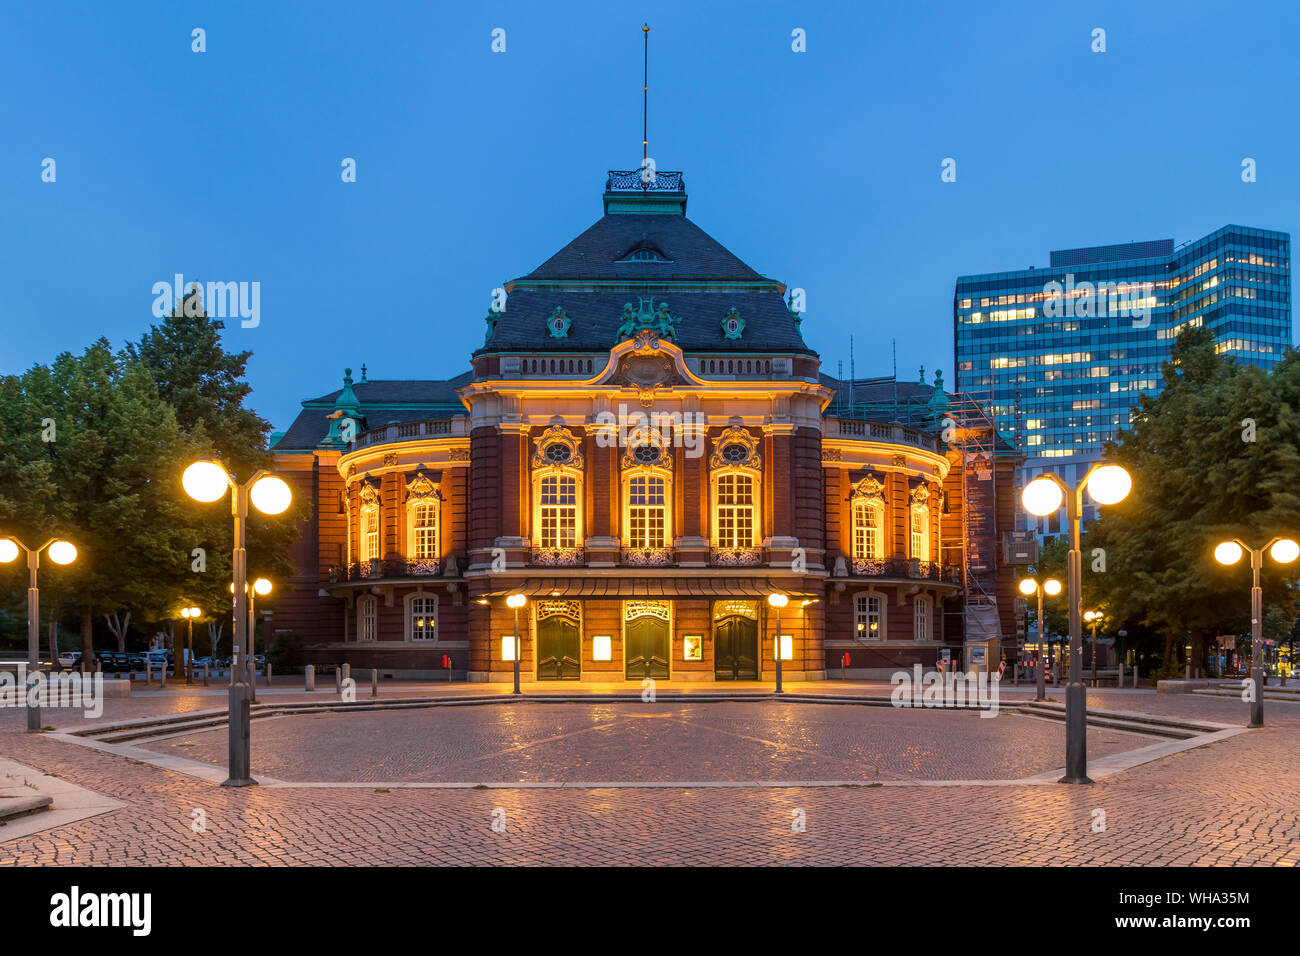 La salle de concerts Laeiszhalle éclairé à Johannes Brahms Square pendant le crépuscule, Hambourg, Allemagne, Europe Banque D'Images